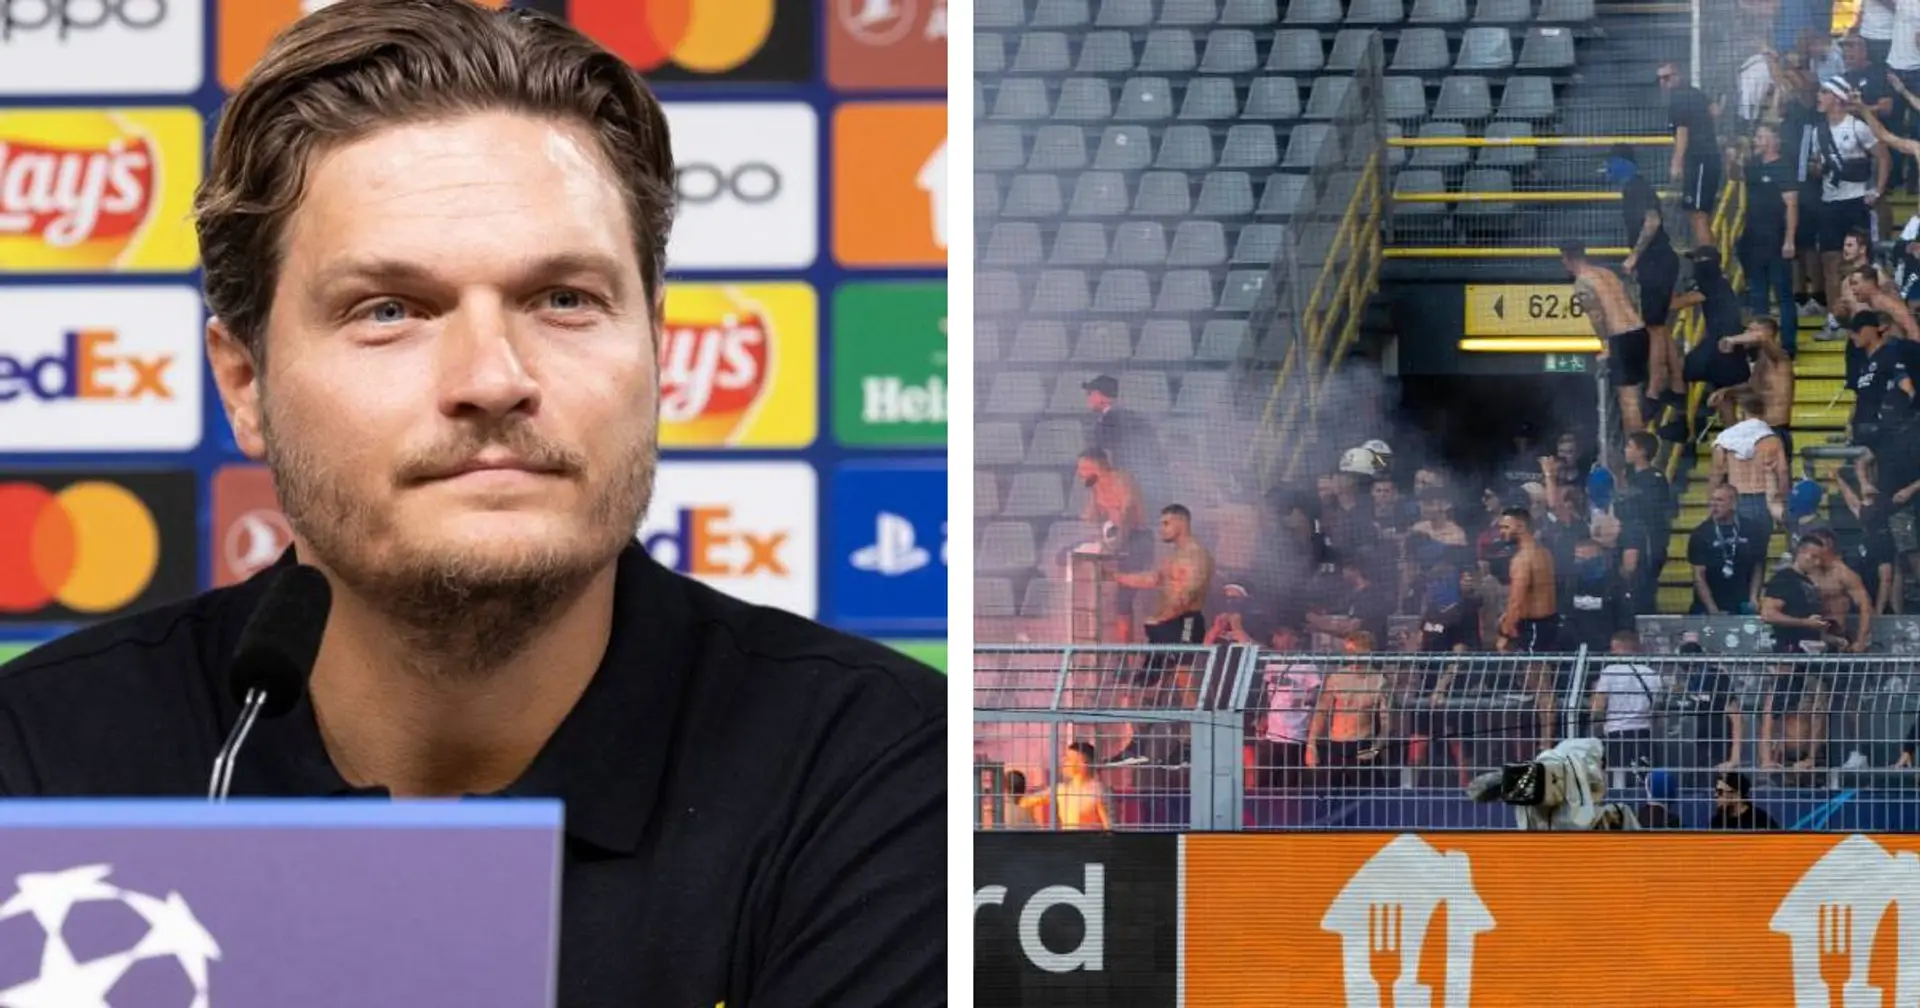 "Wir sollten schlau genug sein": Terzic appelliert an die BVB-Fans, sich in Kopenhagen friedlich zu verhalten